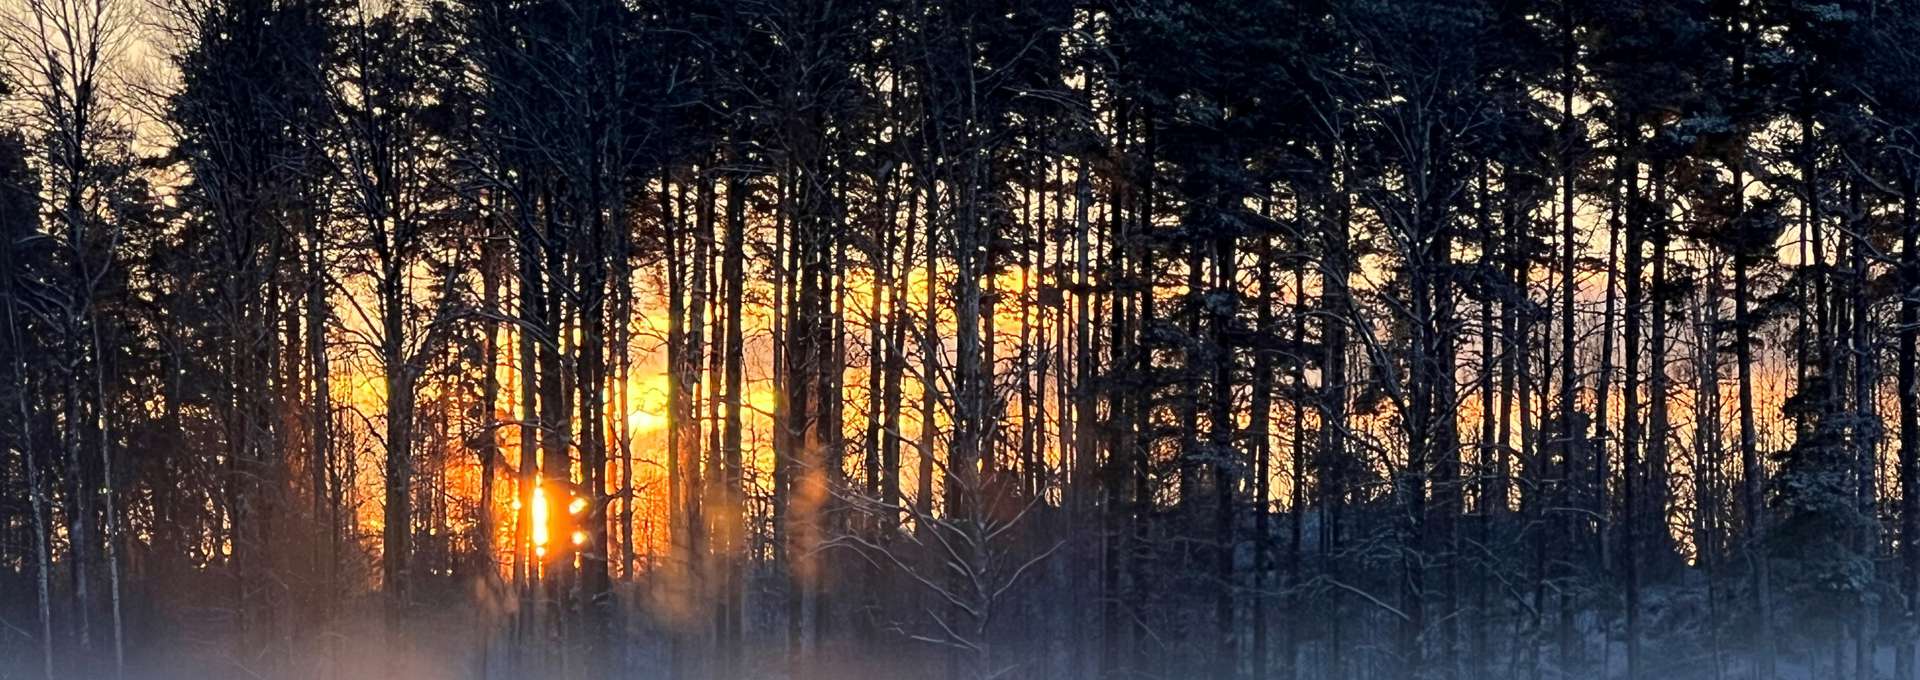 En snötäckt skog i gryningen/skymning.